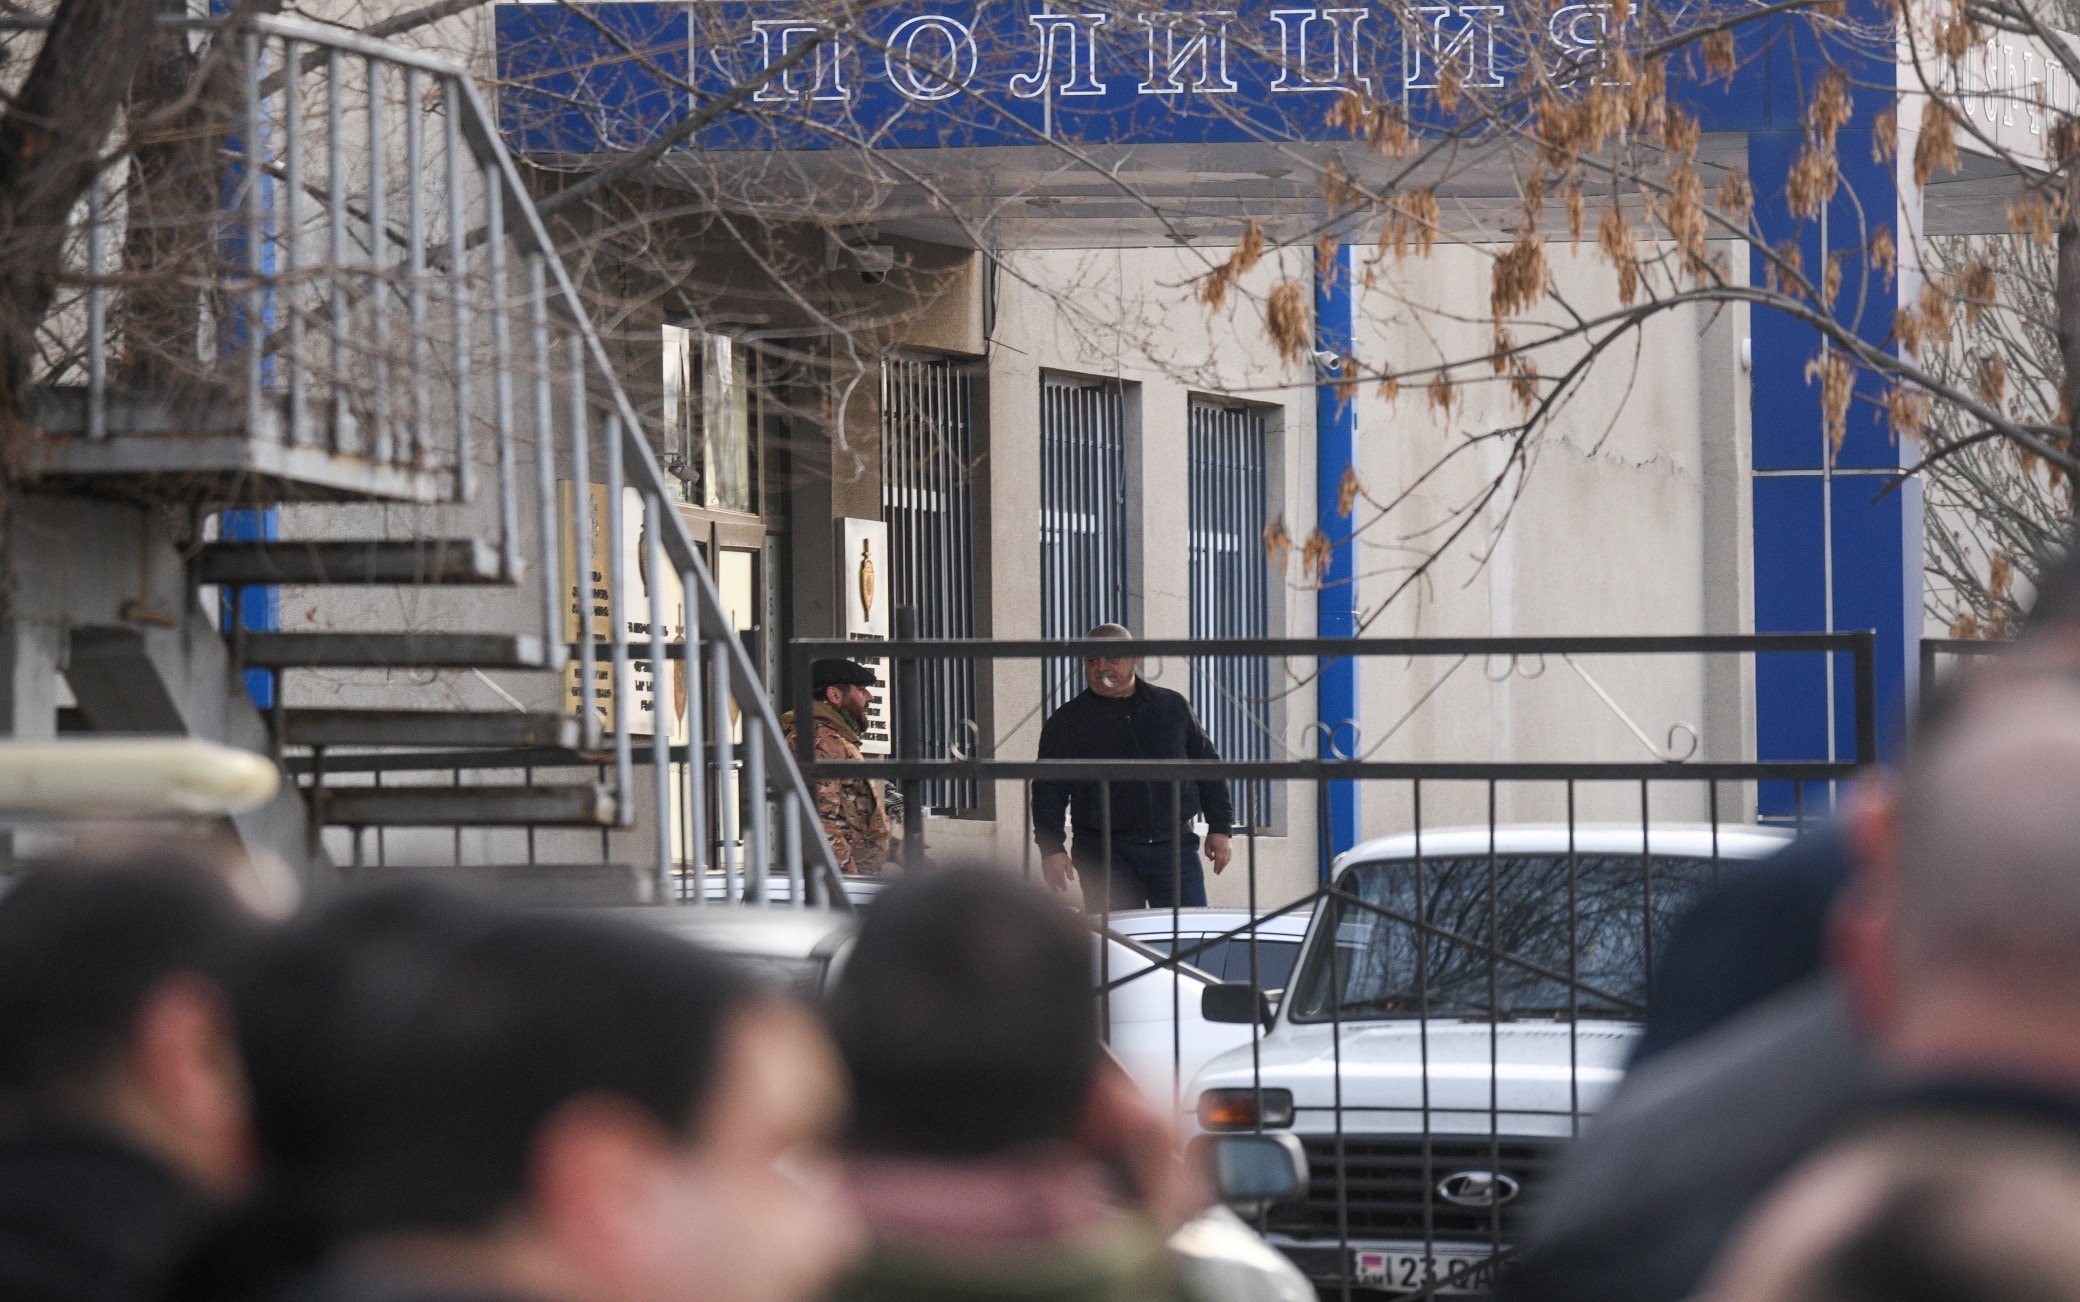 La polizia di fronte al commissariato Nor Nork della capitale armena Yerevan, dove alcune persone sono entrate armate